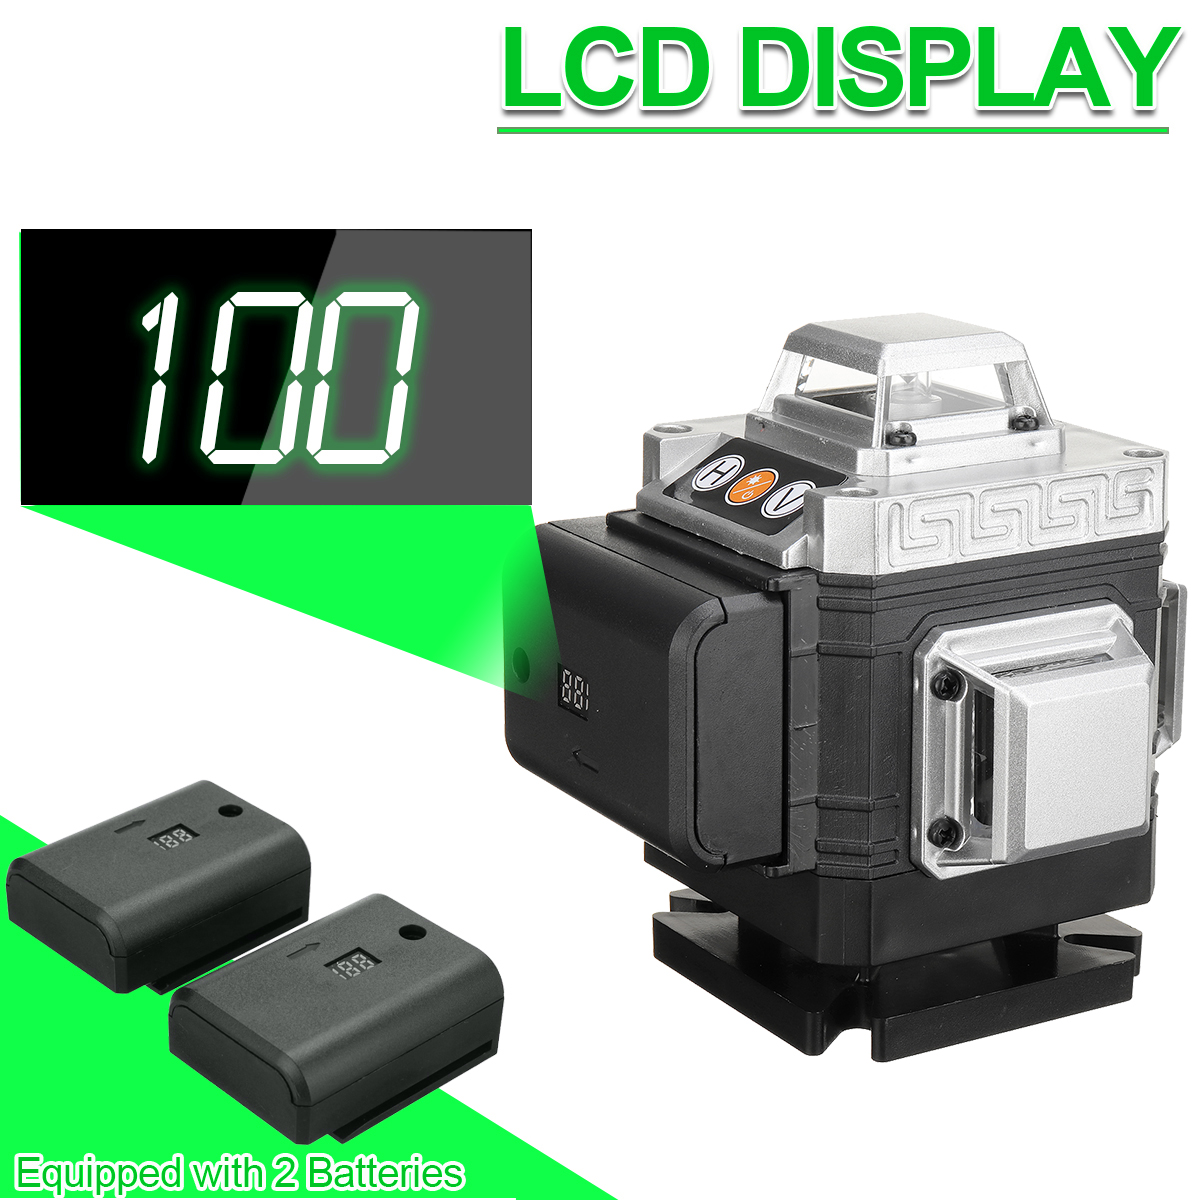 81216-Line-360deg-4D-Line-Laser-Level-Green-Light-Self-Leveling-Cross-Measure-Tool-Kit-1864007-4